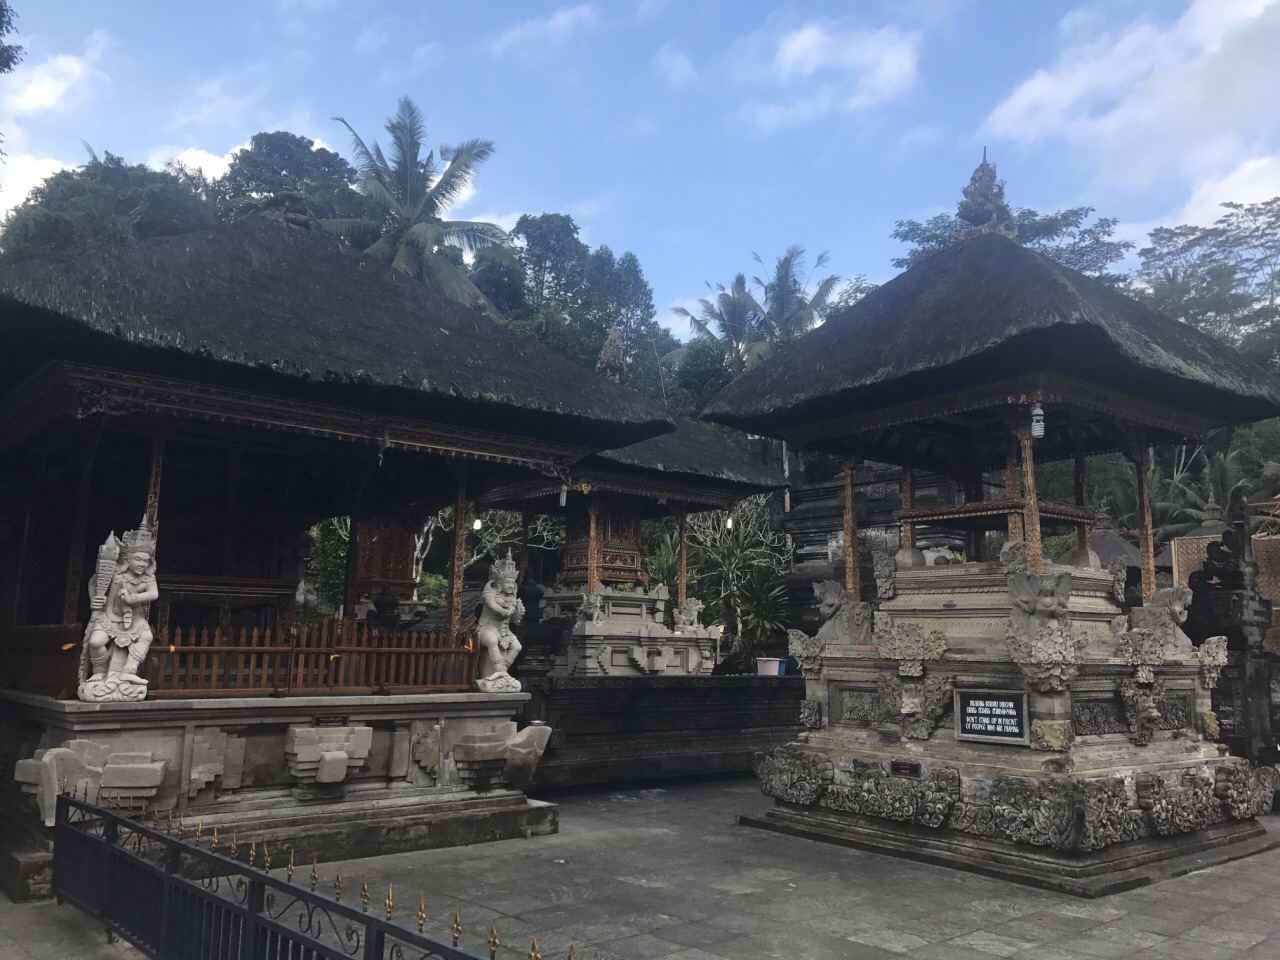 【携程攻略】巴厘岛圣泉寺景点,圣泉寺……巴厘岛必须要去的一个景点